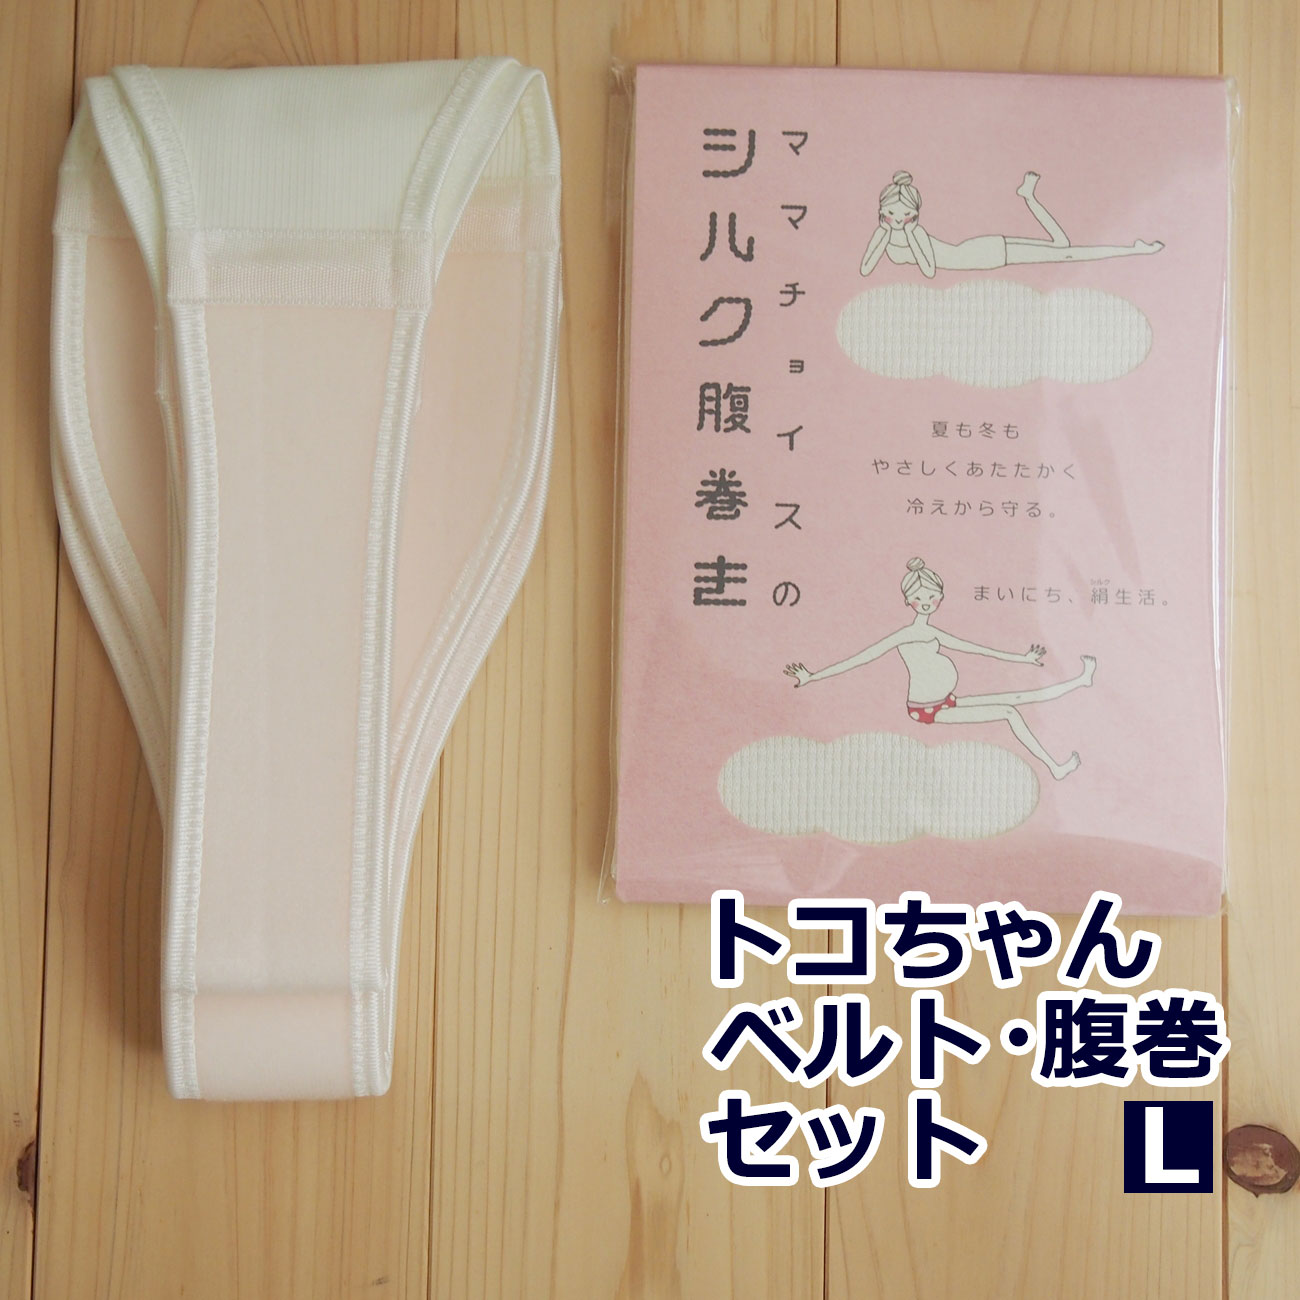 トコちゃんベルト 2 セット L サイズ 腹巻 シルク腹巻き ふわっと腹巻 産後 腹帯 妊婦帯 日本製 腰痛ベルト